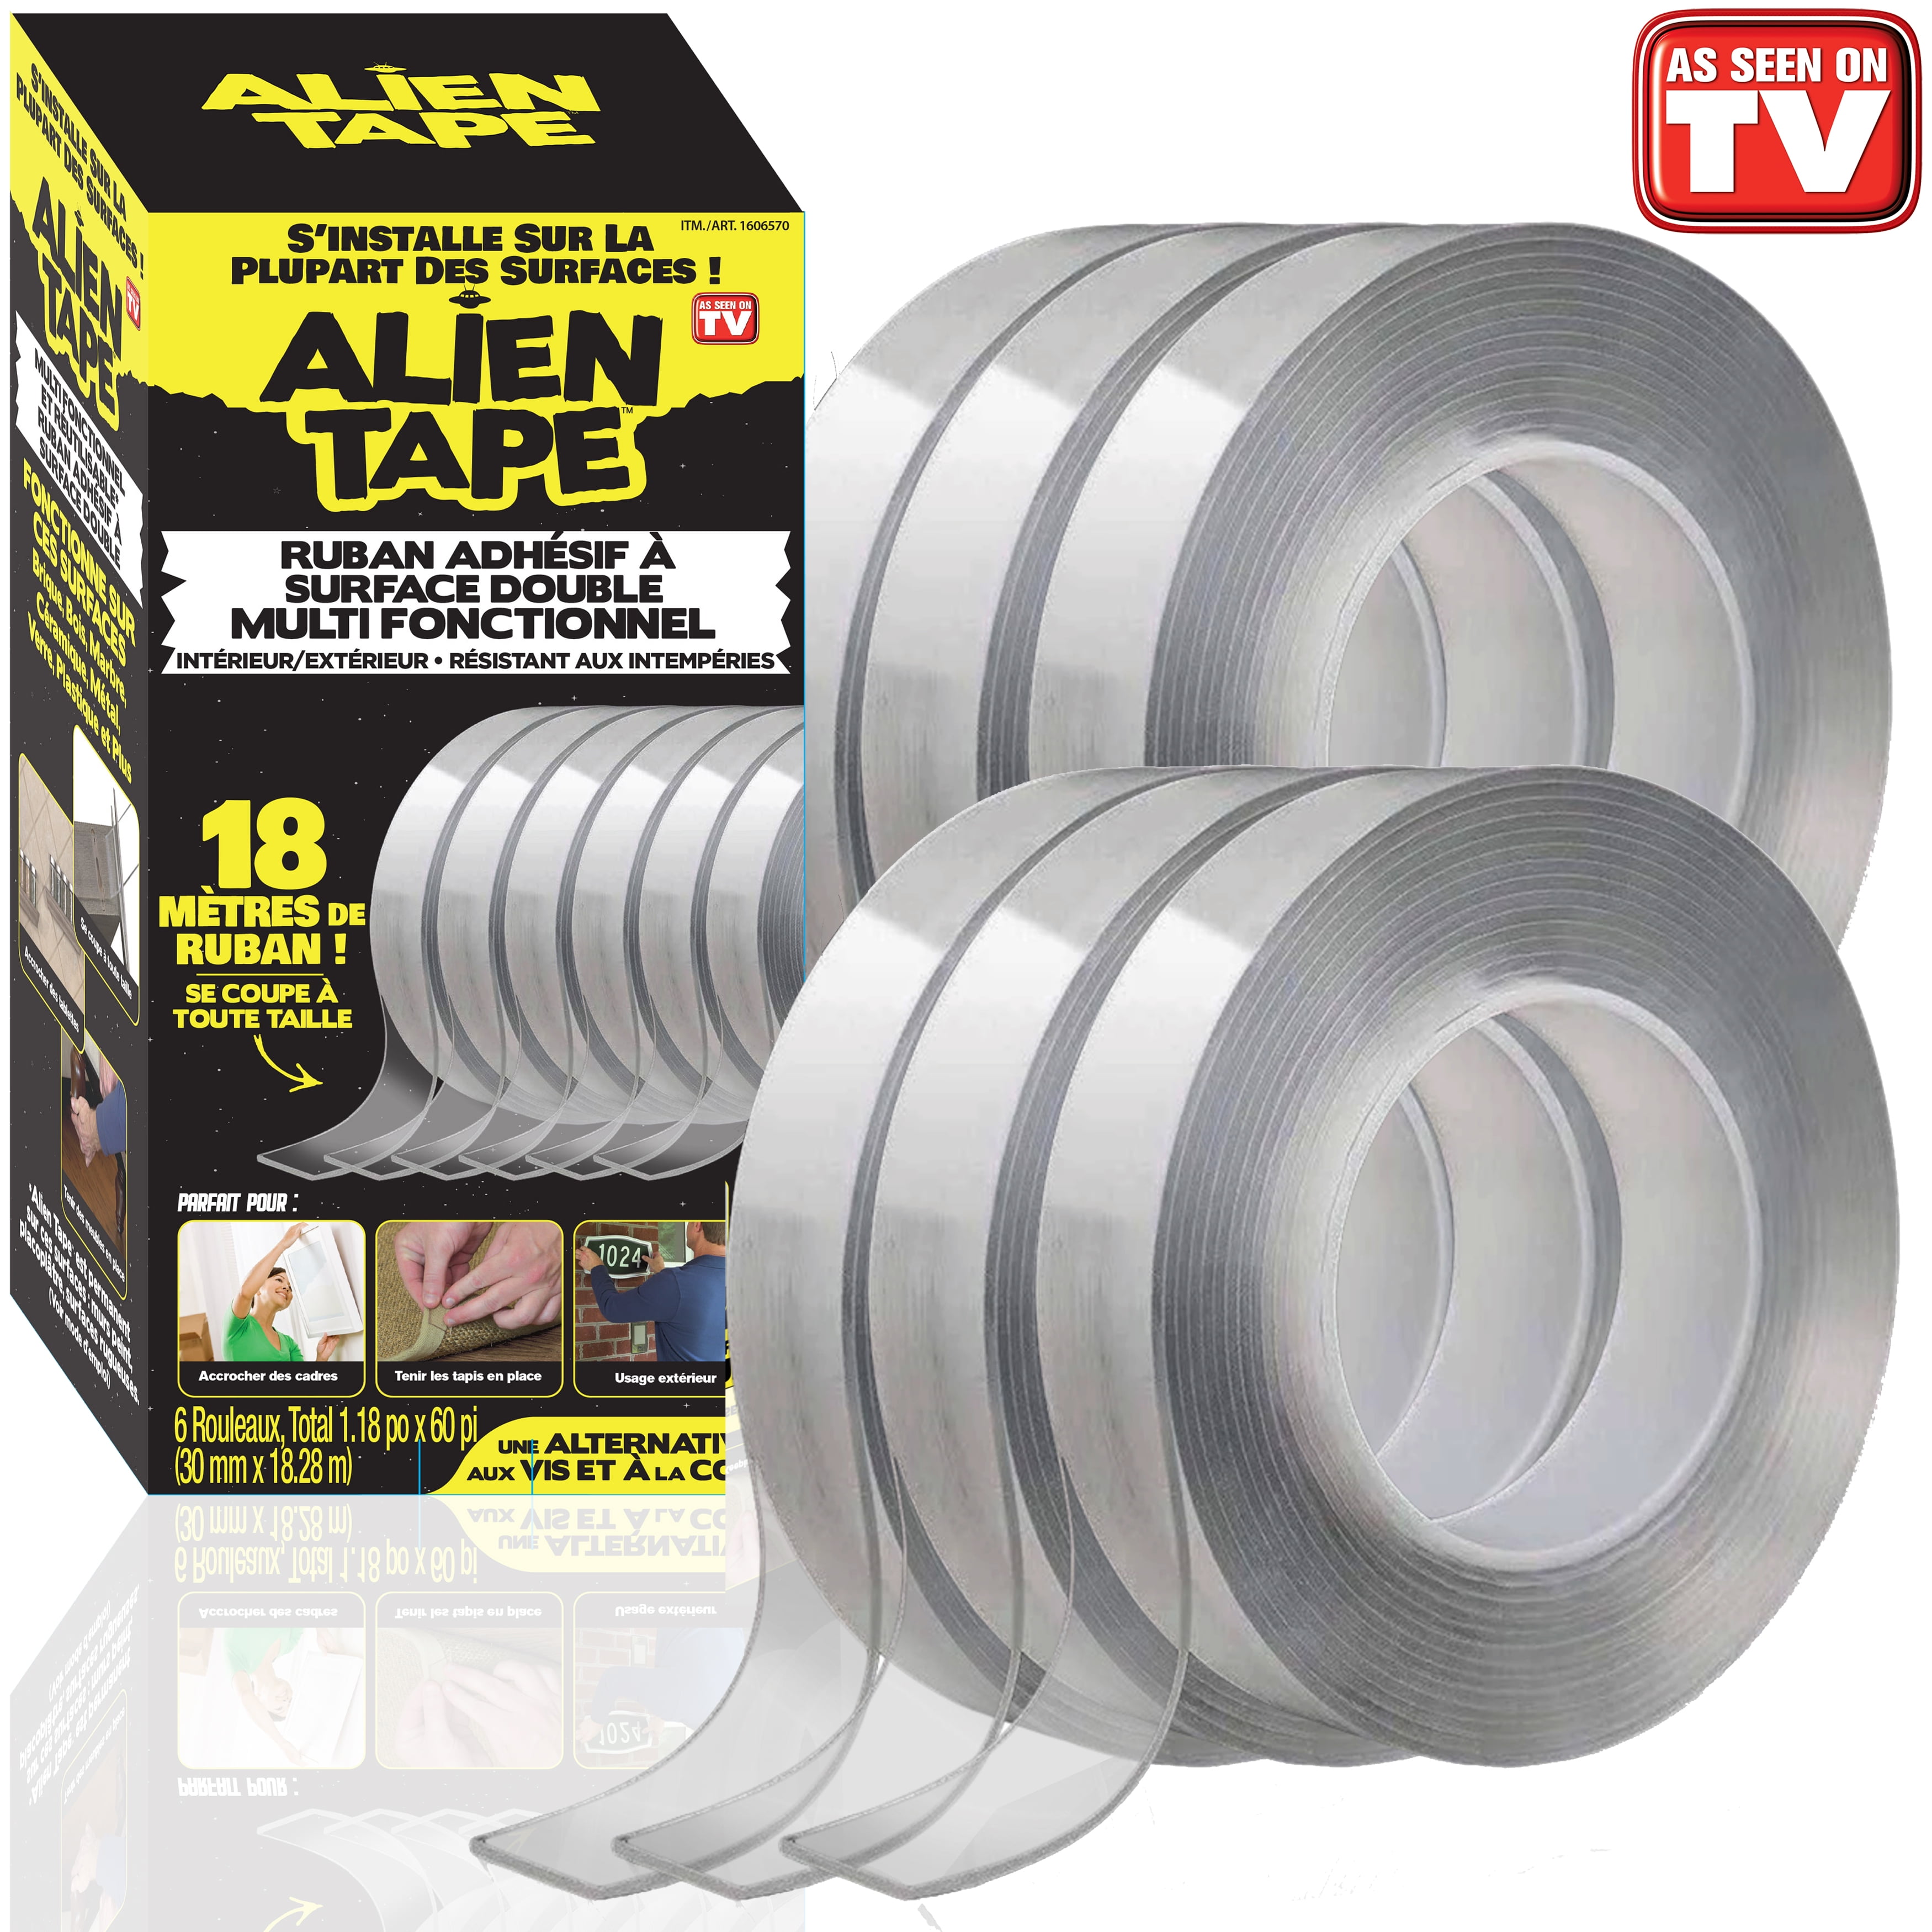 Alien Tape Multipurpose Reusable Double Sided Tape 6 Rolls, 60Ft.